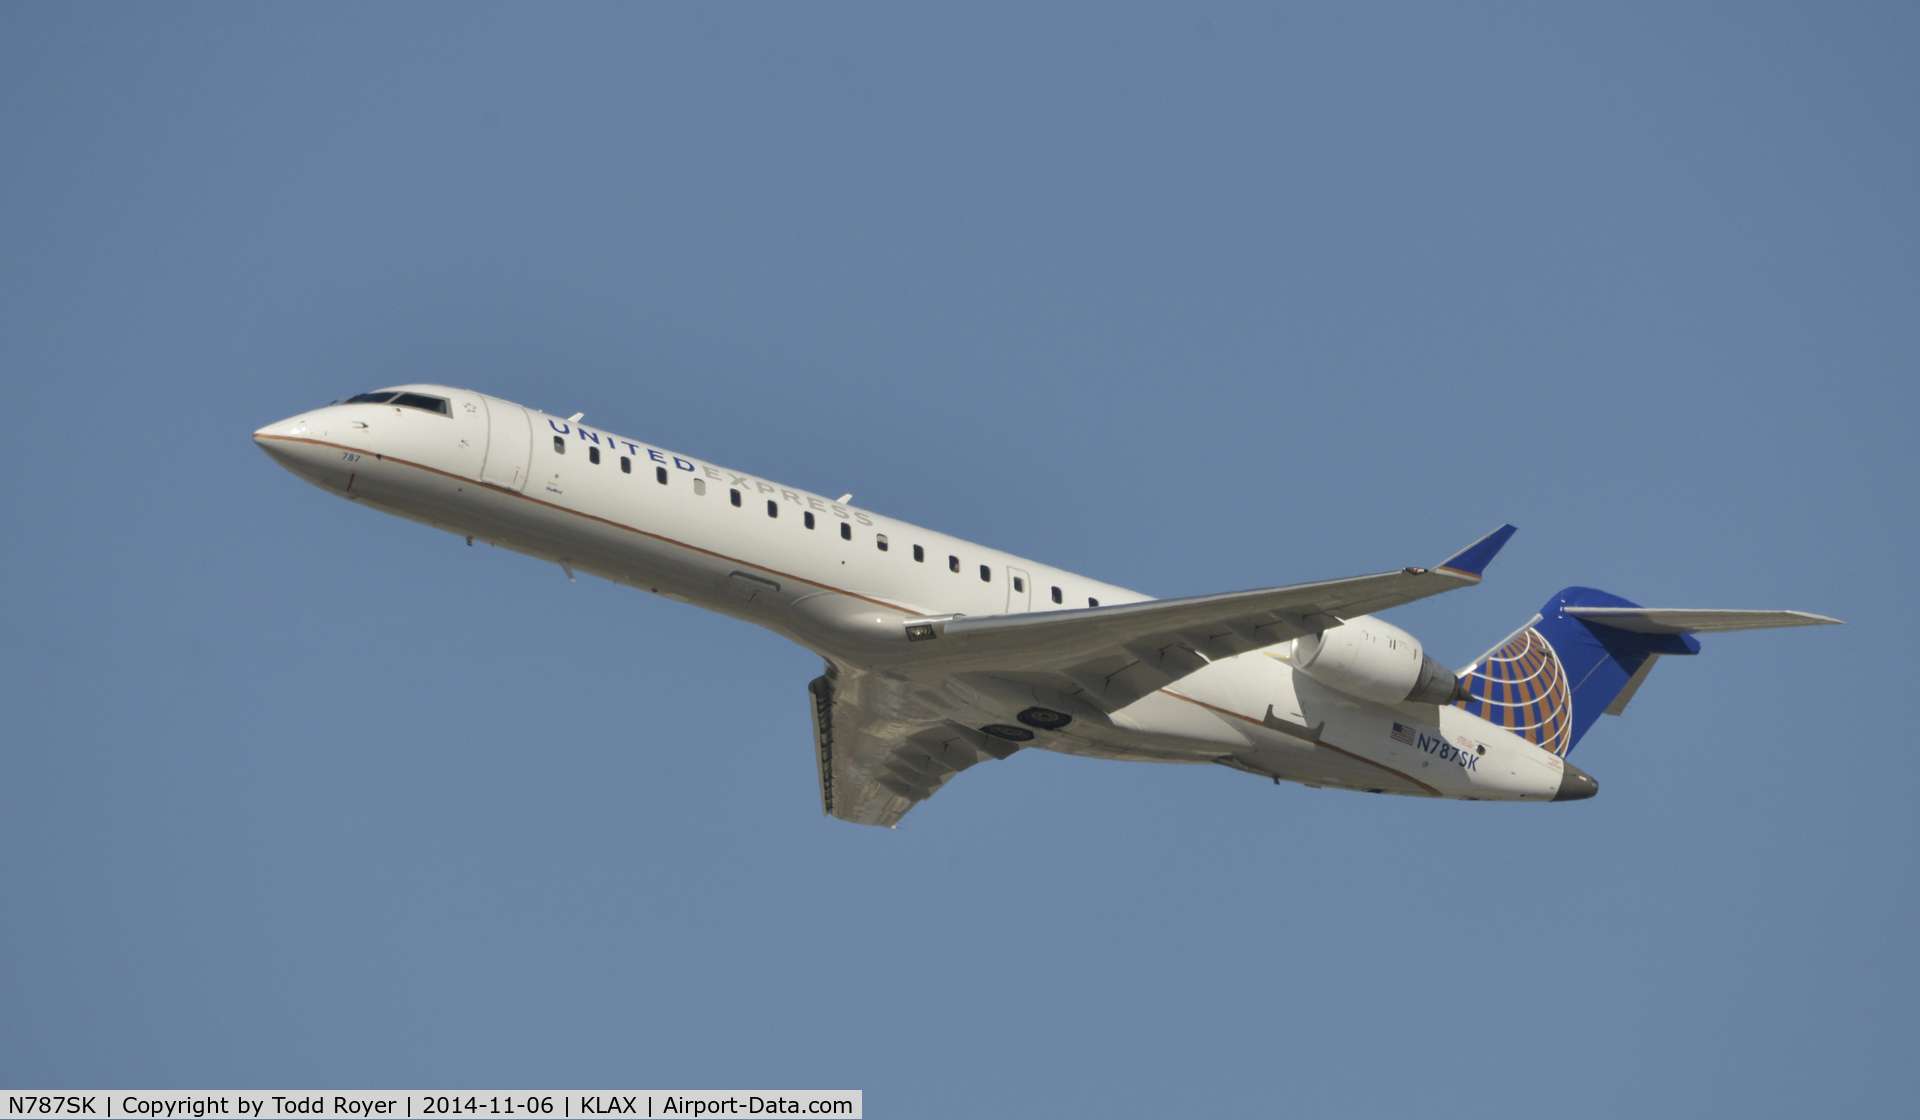 N787SK, 2009 Bombardier CRJ-700 (CL-600-2C10) Regional Jet C/N 10288, Departing LAX on 25R